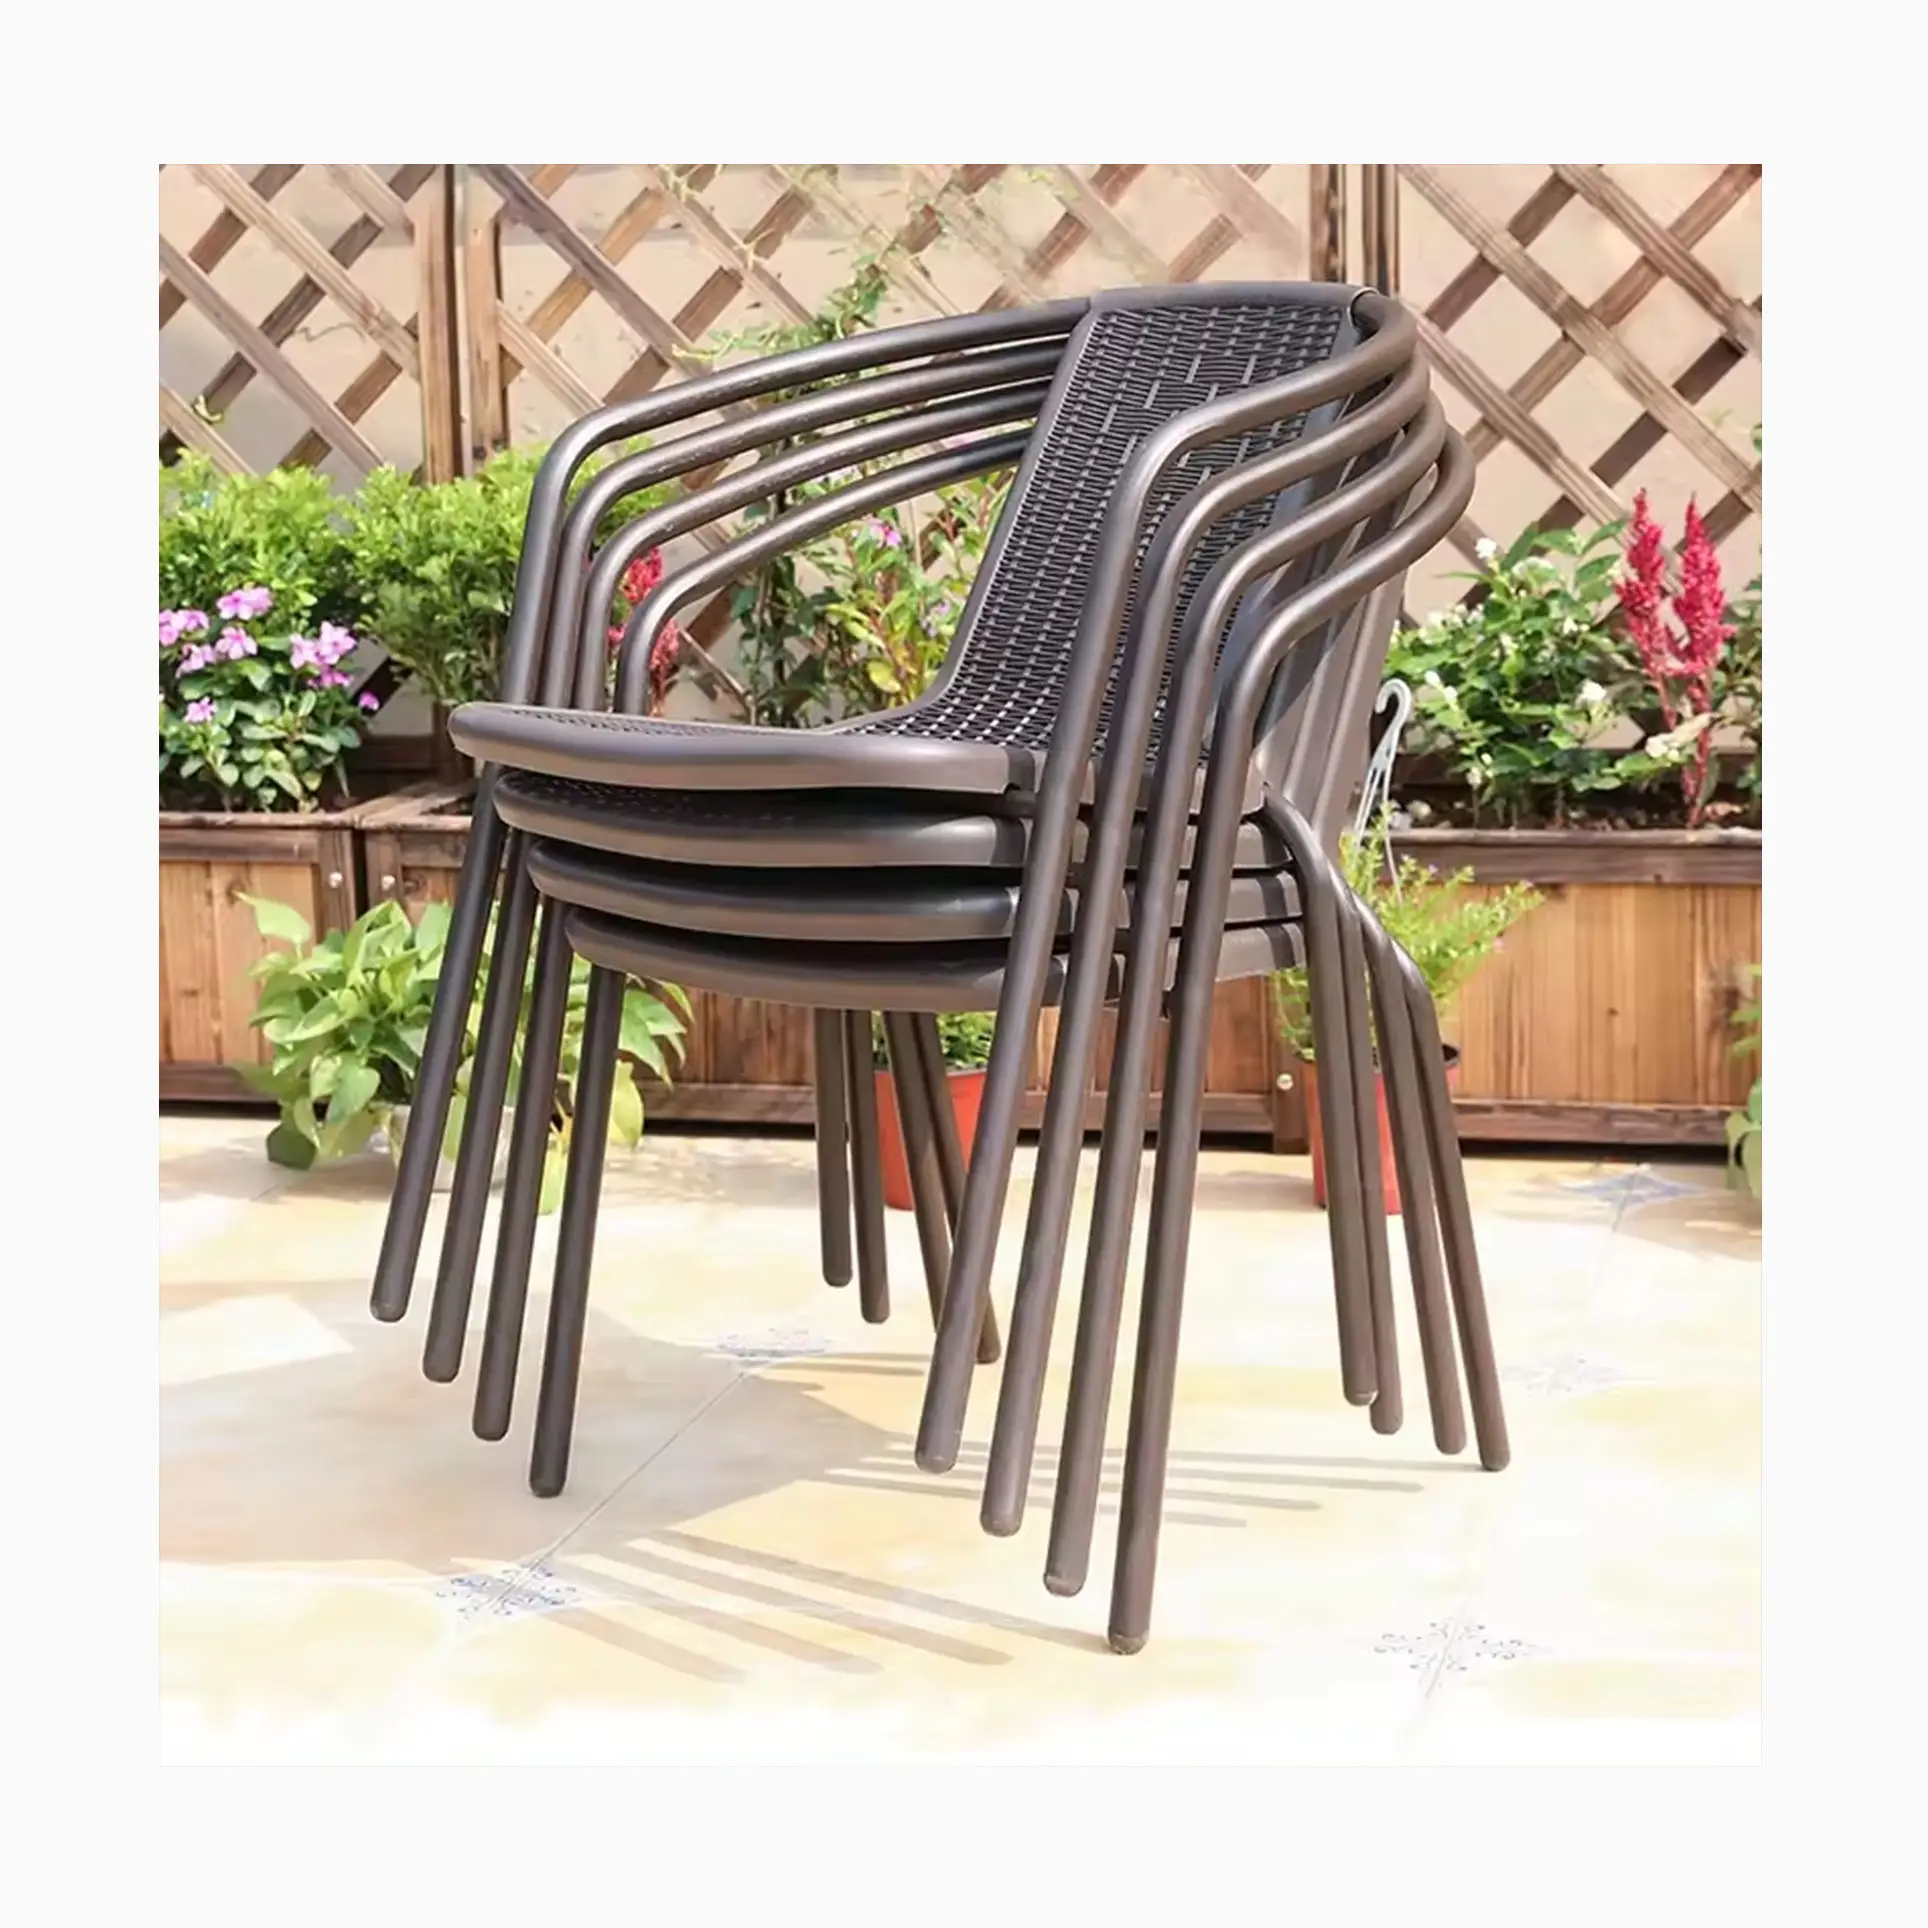 BOER kursi plastik rotan bisa ditumpuk, kursi plastik rotan murah harga pabrik Outdoor taman teras restoran